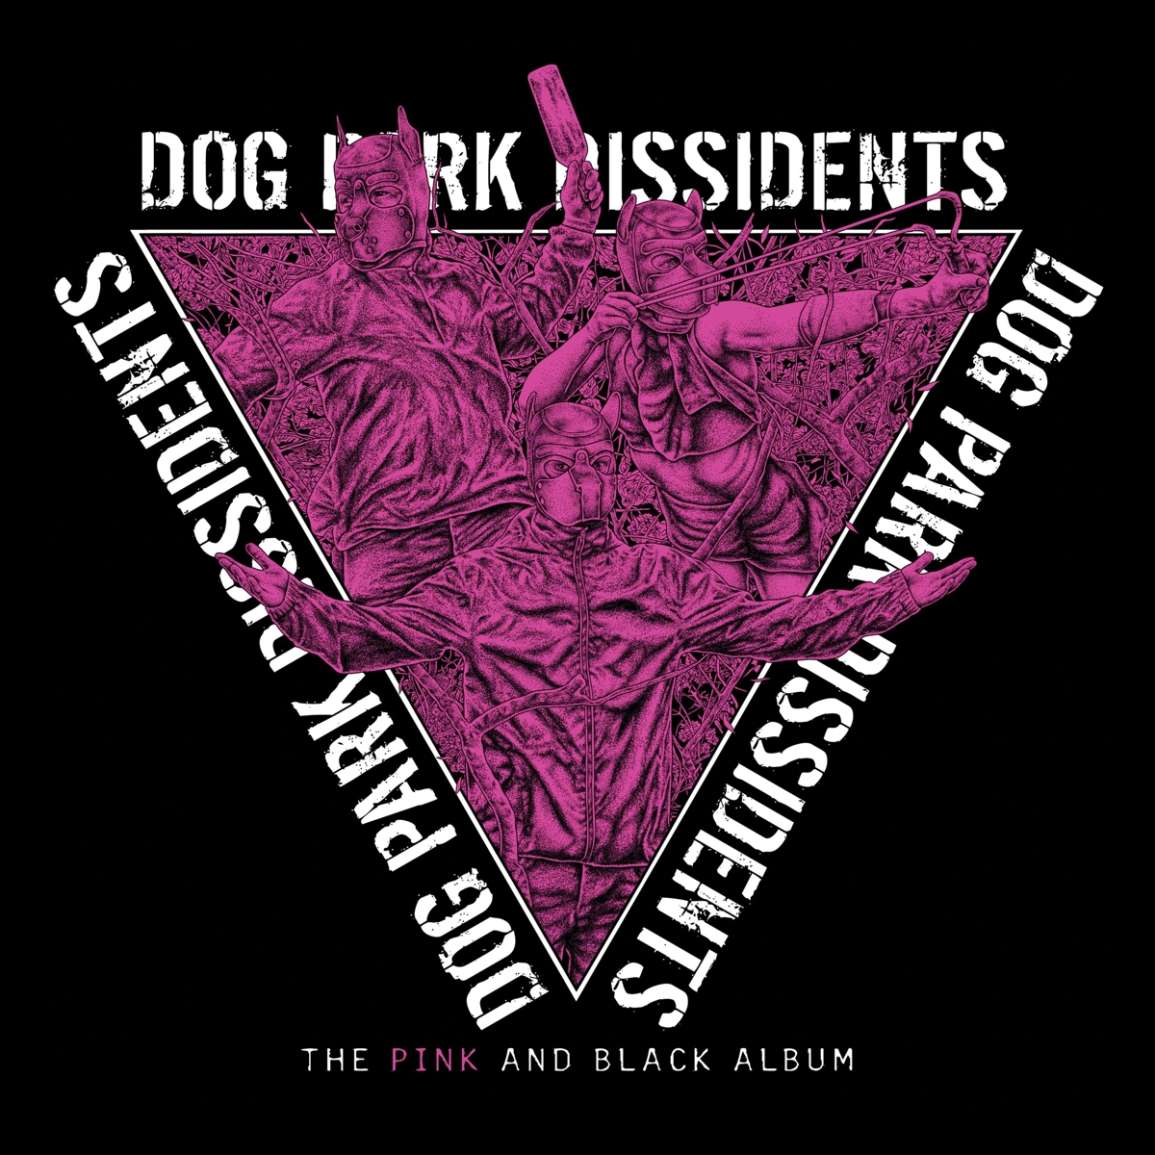 Dog Park Dissidents: The Pink And Black Album (Limited Pink/Black  Splattered Vinyl)